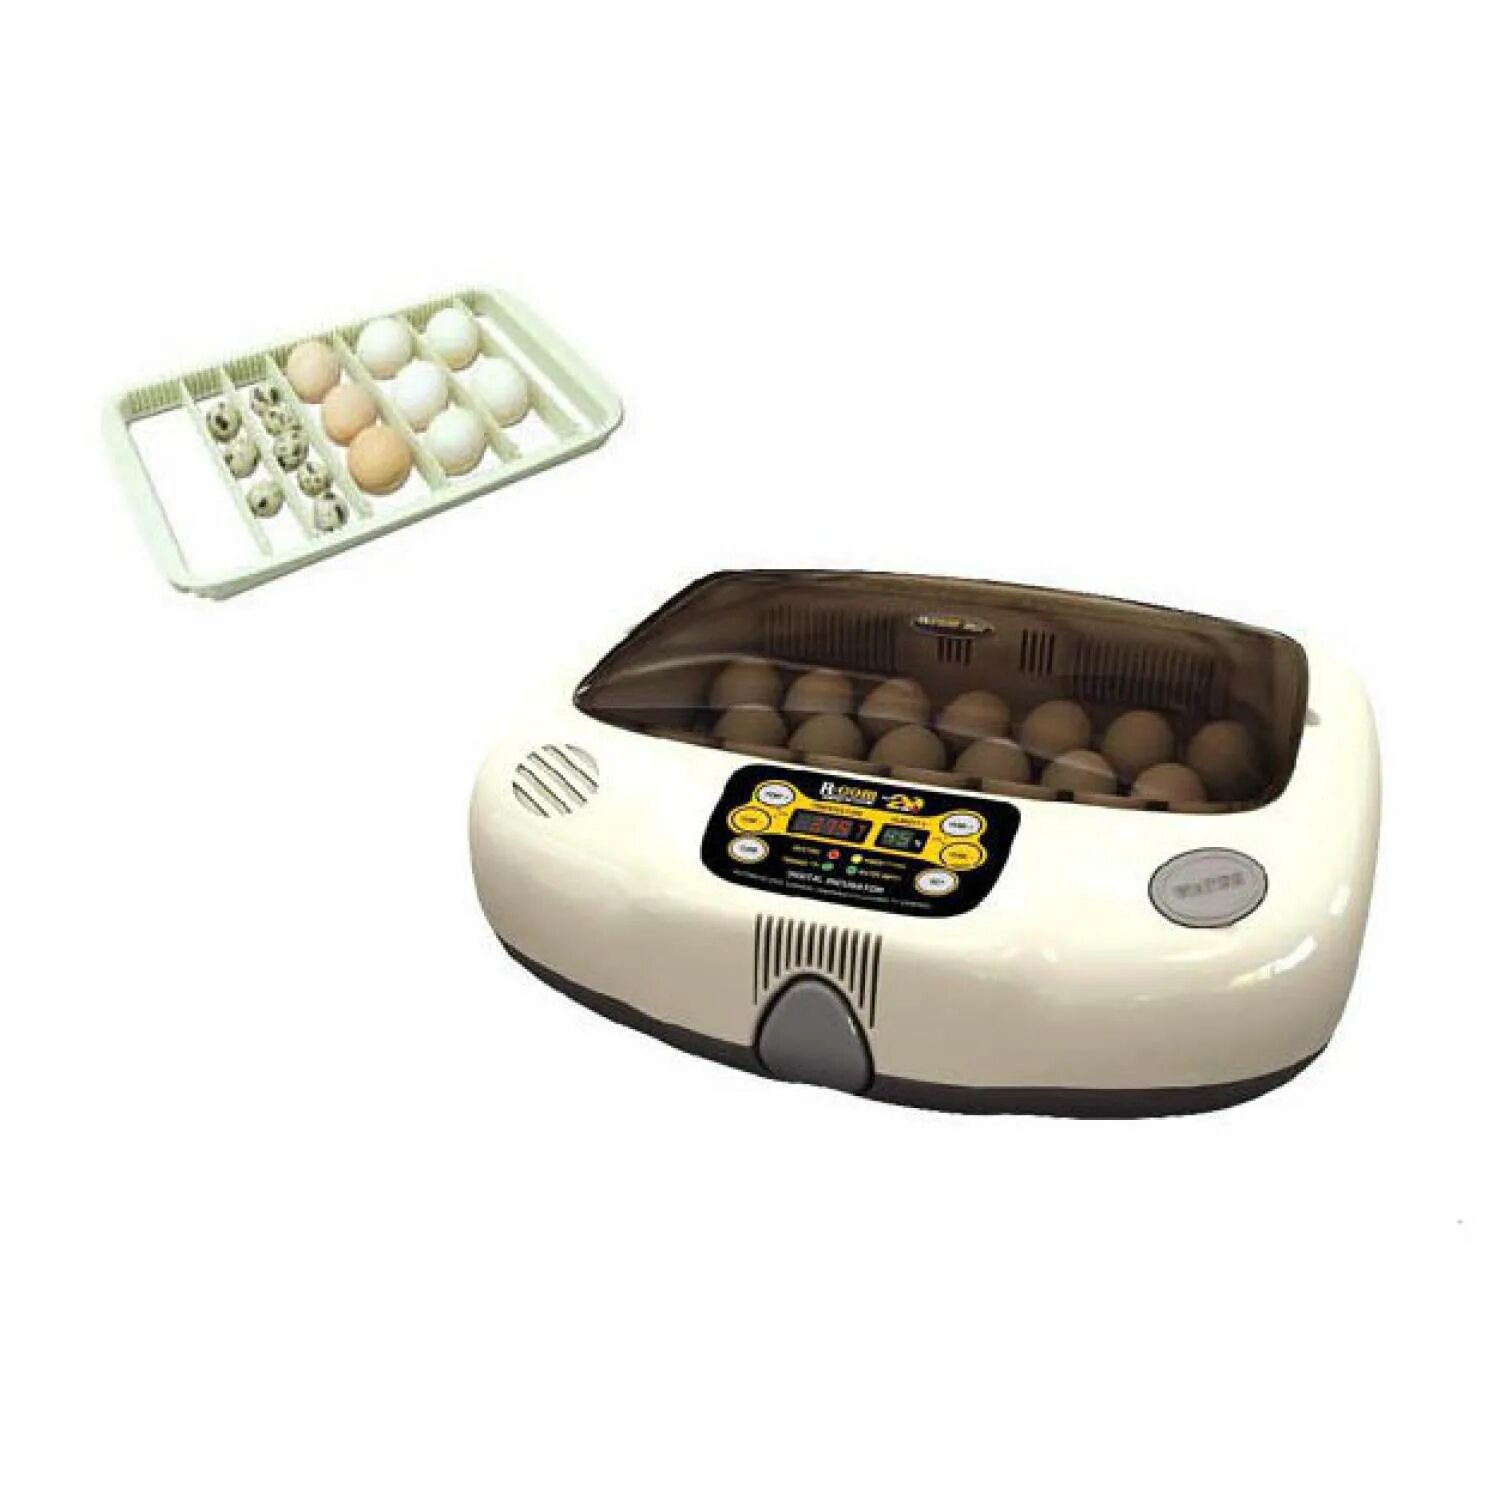 Инкубатор для яиц автоматический на 70 яиц. Инкубатор RCOM 50 Pro. Инкубатор для яиц автоматический на 20 яиц. Инкубатор корейский автоматический. Инкубатор r-com 528 Pro.